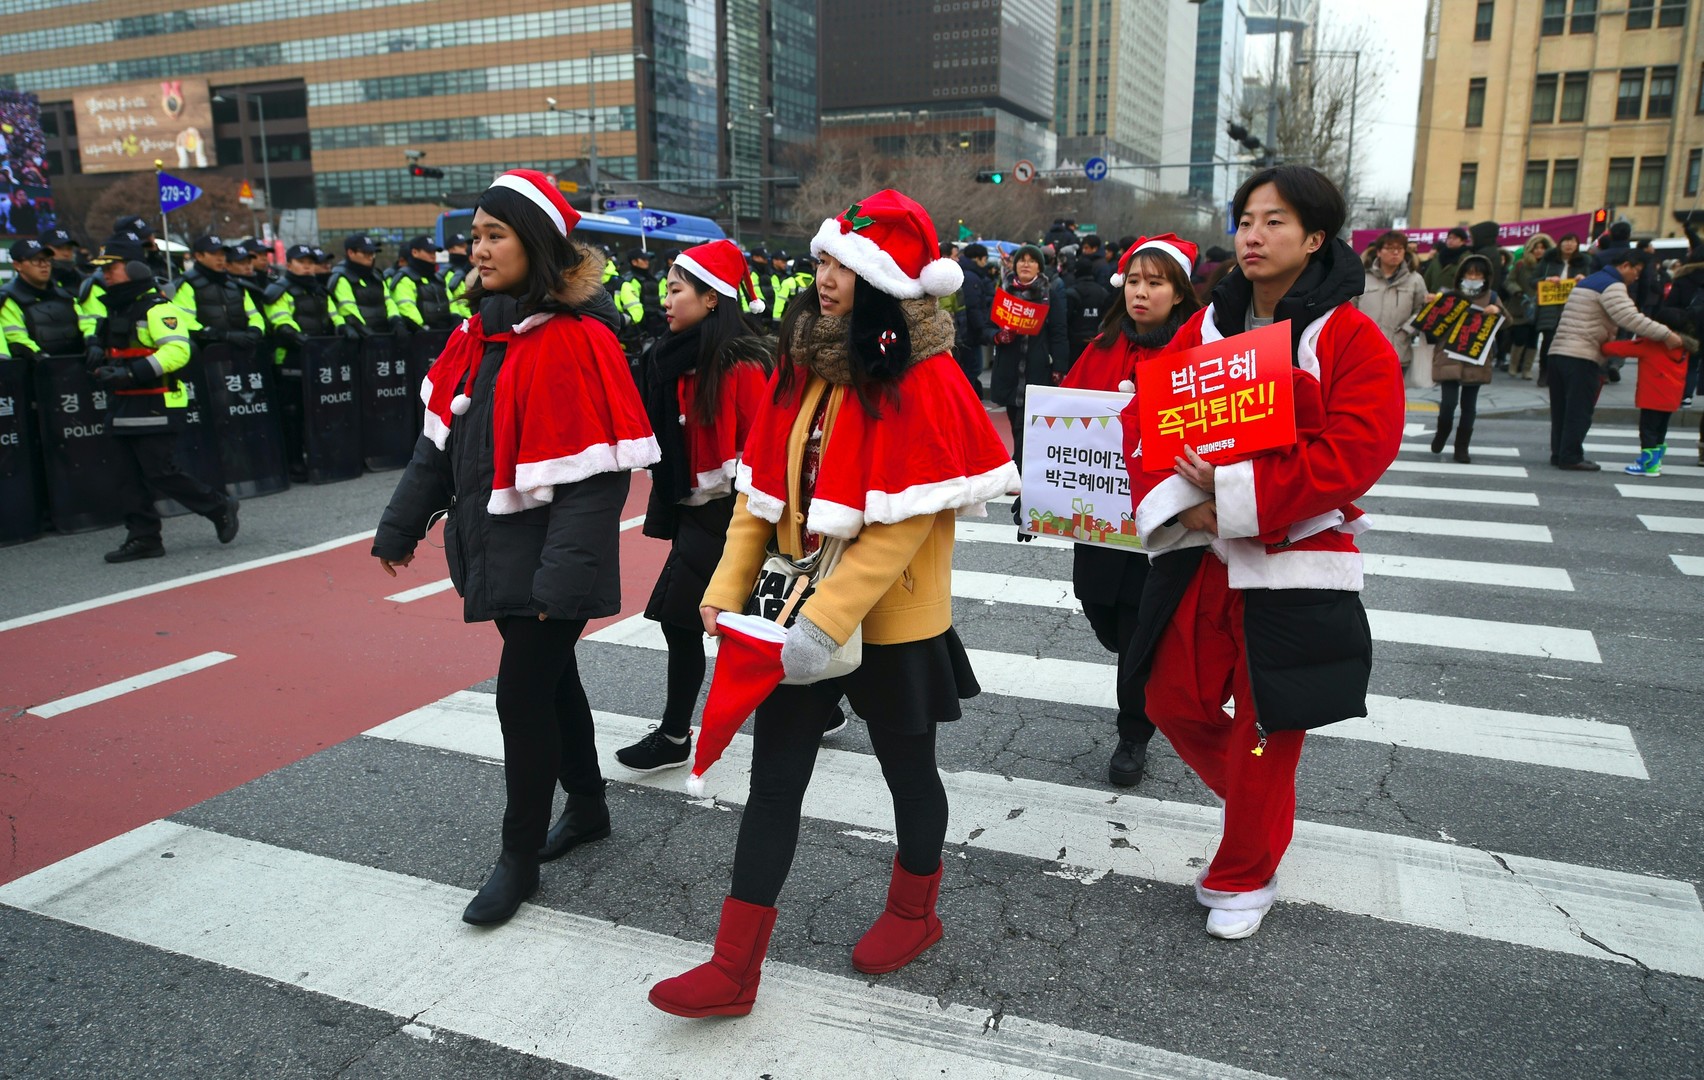 Corée du Sud : des «Pères Noël» manifestent contre la présidente Park Geun-hye (PHOTOS)